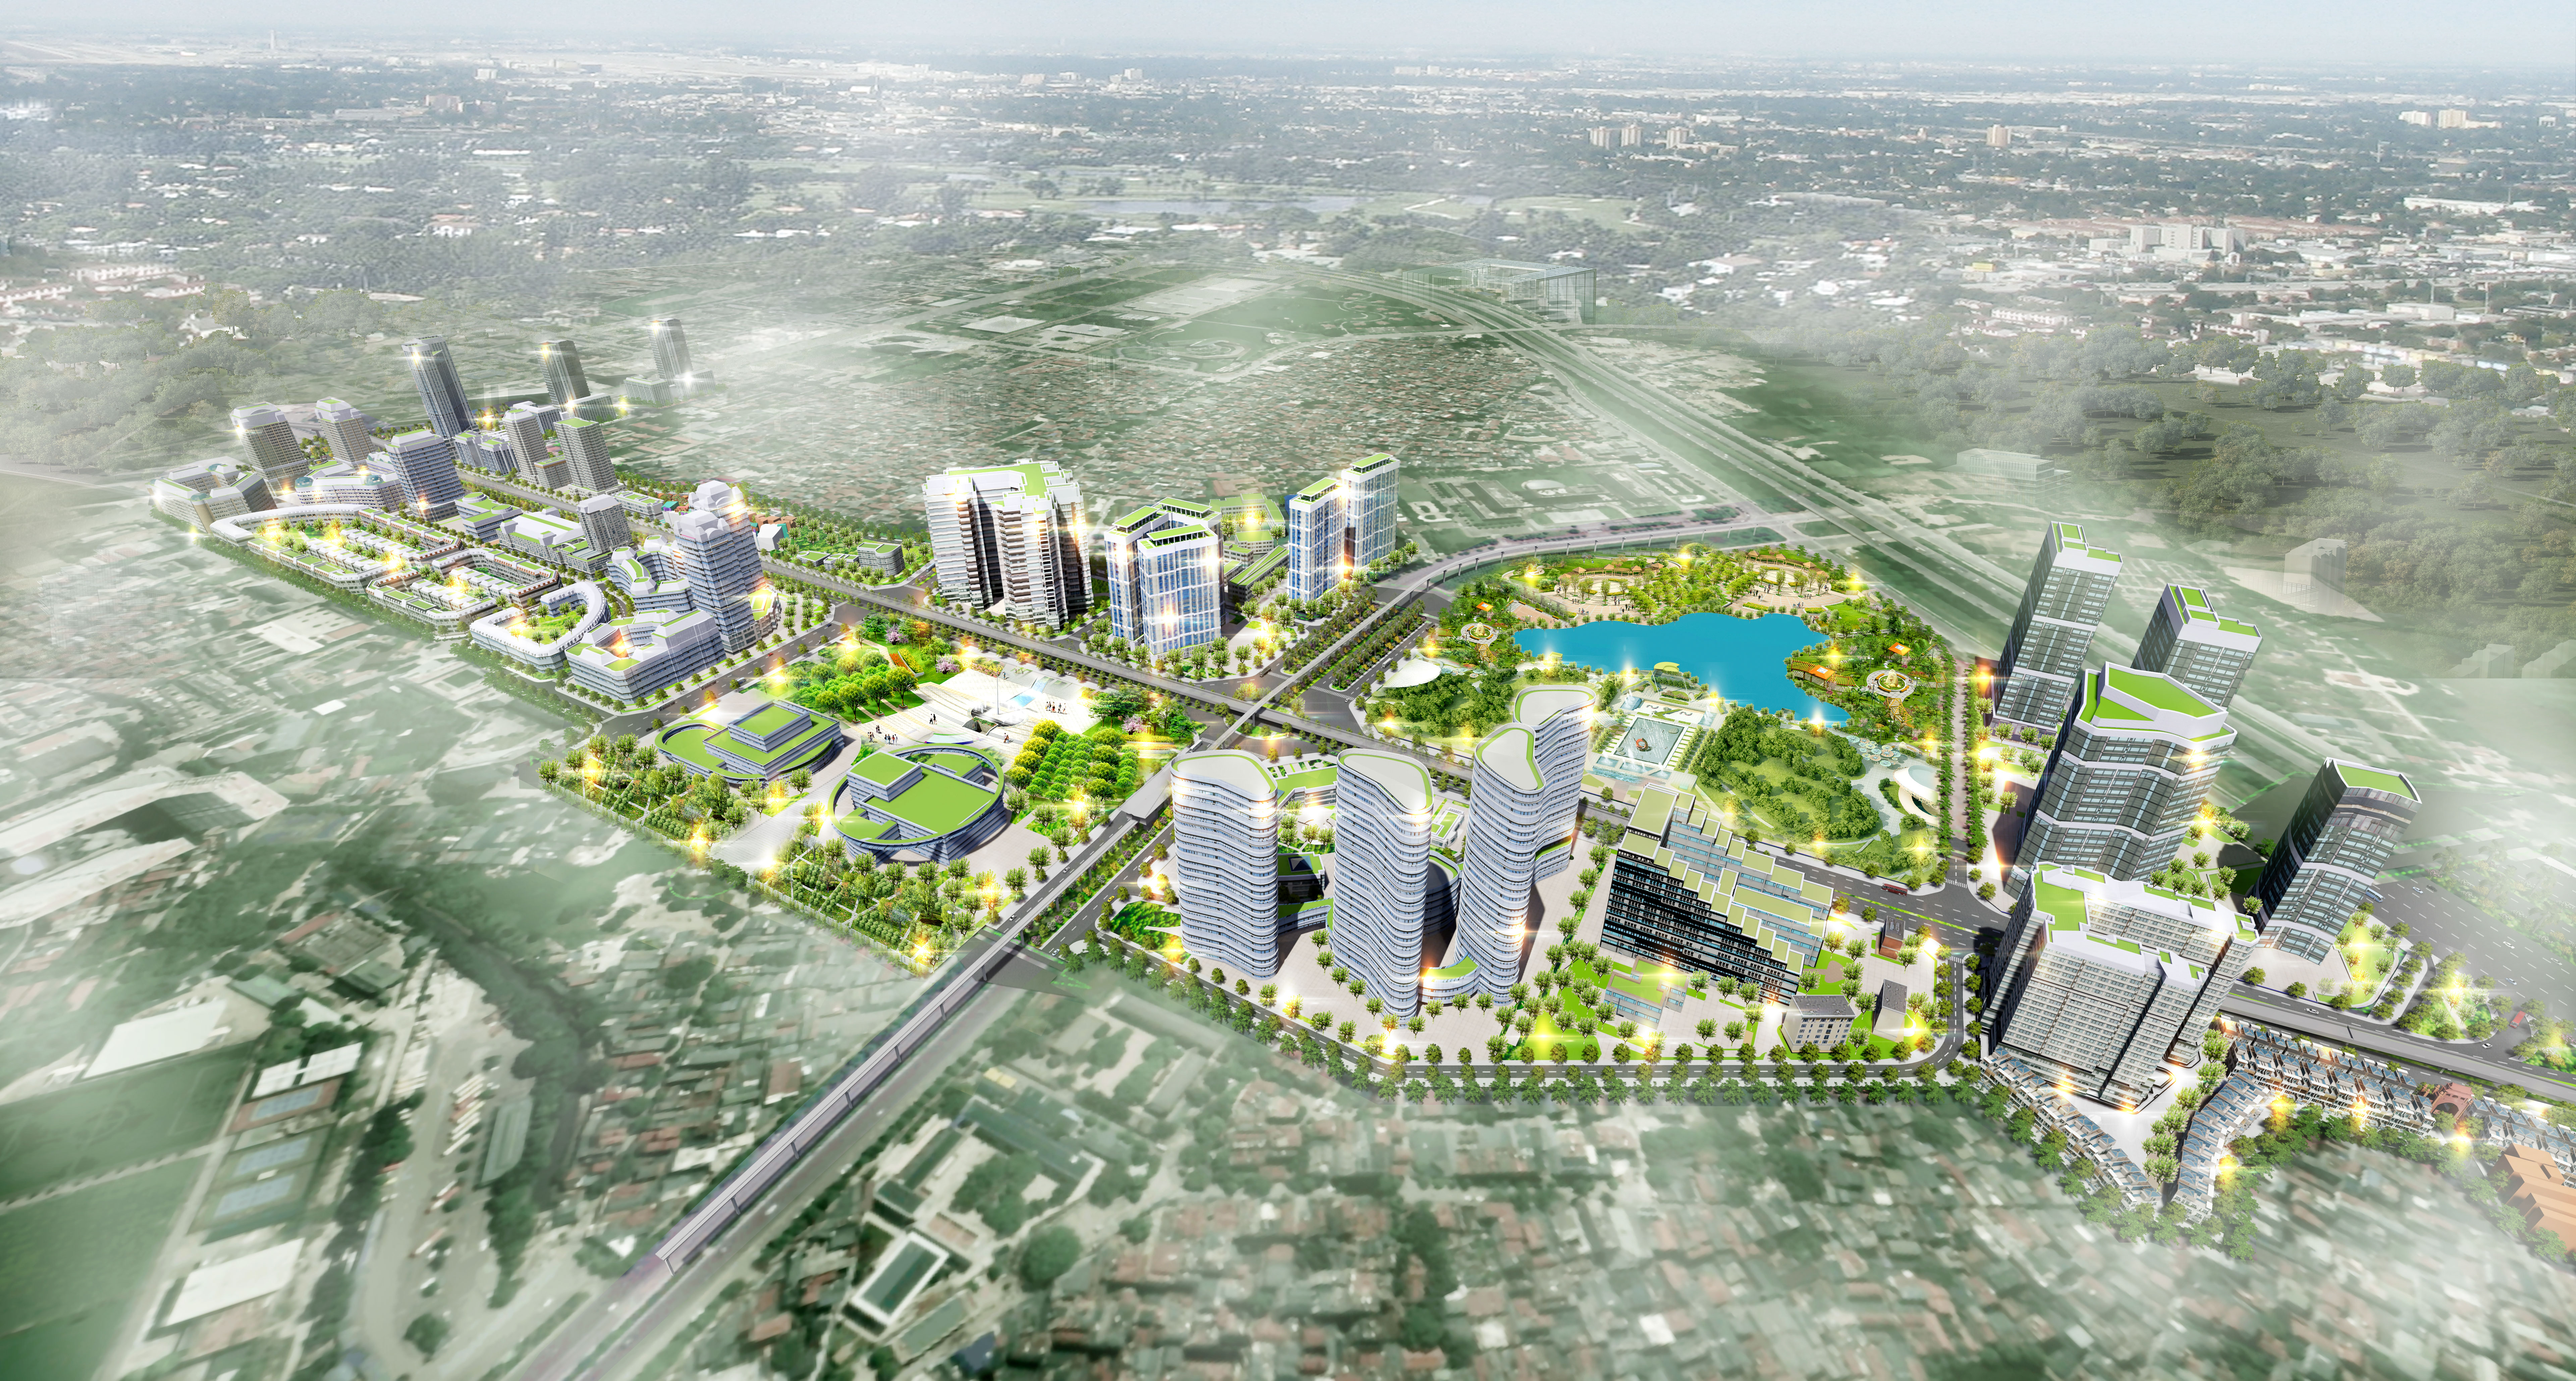 Thiết kế đô thị hai bên tuyến đường Bảo tàng Dân tộc học - Yên Hòa - Phú Đô ( đoạn từ Vành đai 3 - Đại lộ Thăng Long), tỷ lệ 1/500